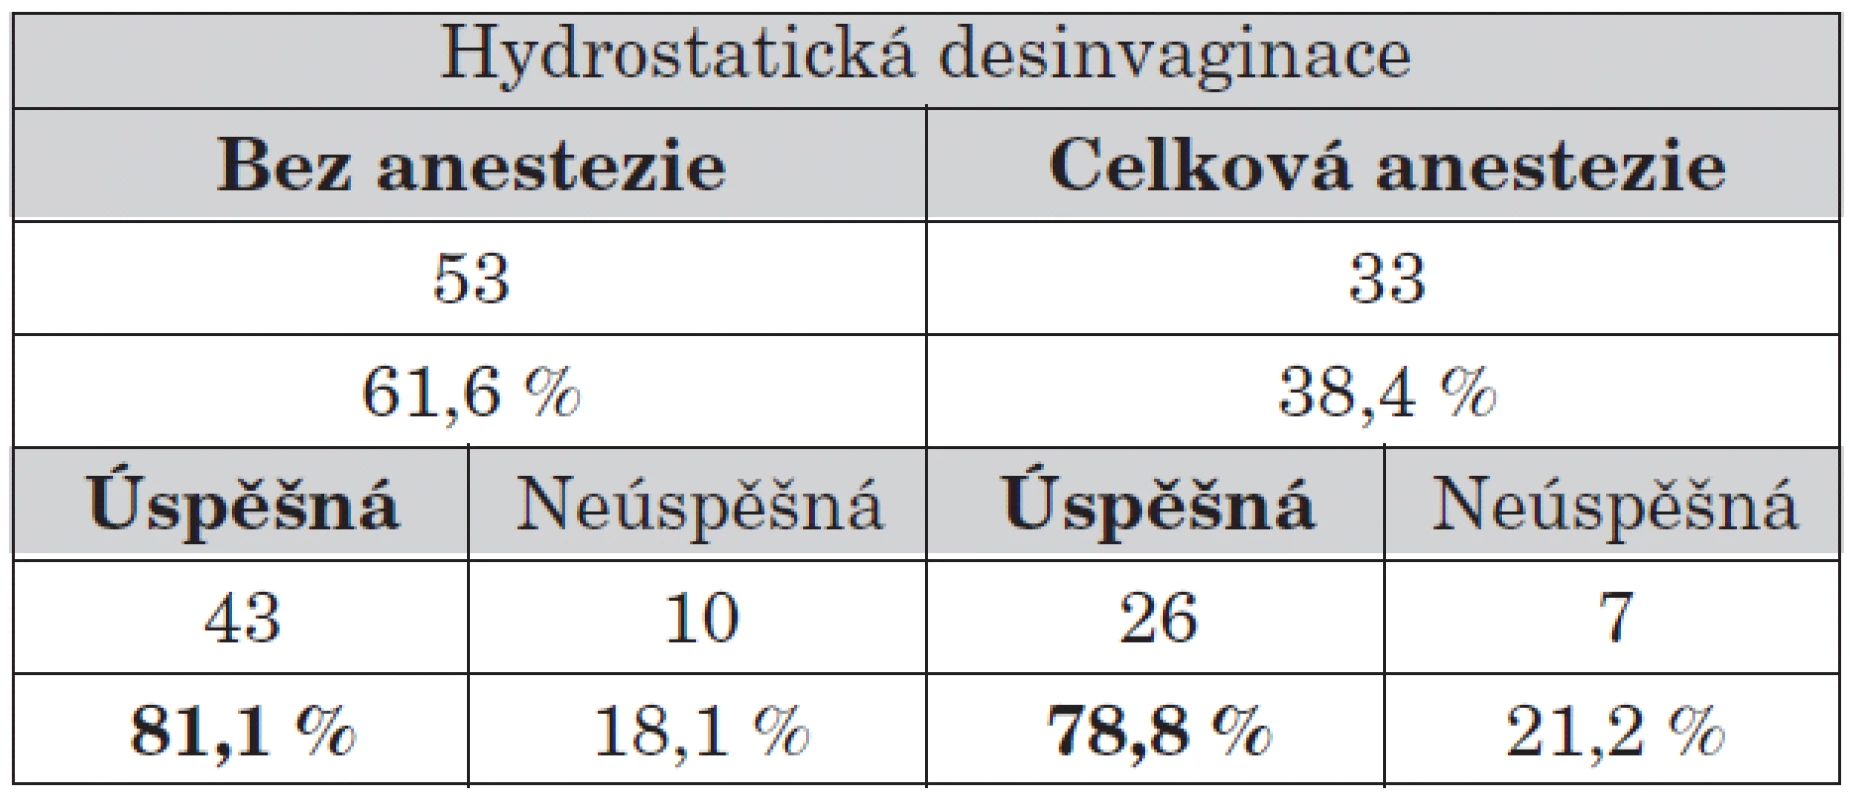 Úspěšnost hydrostatické desinvaginace v závislosti na anestezii.